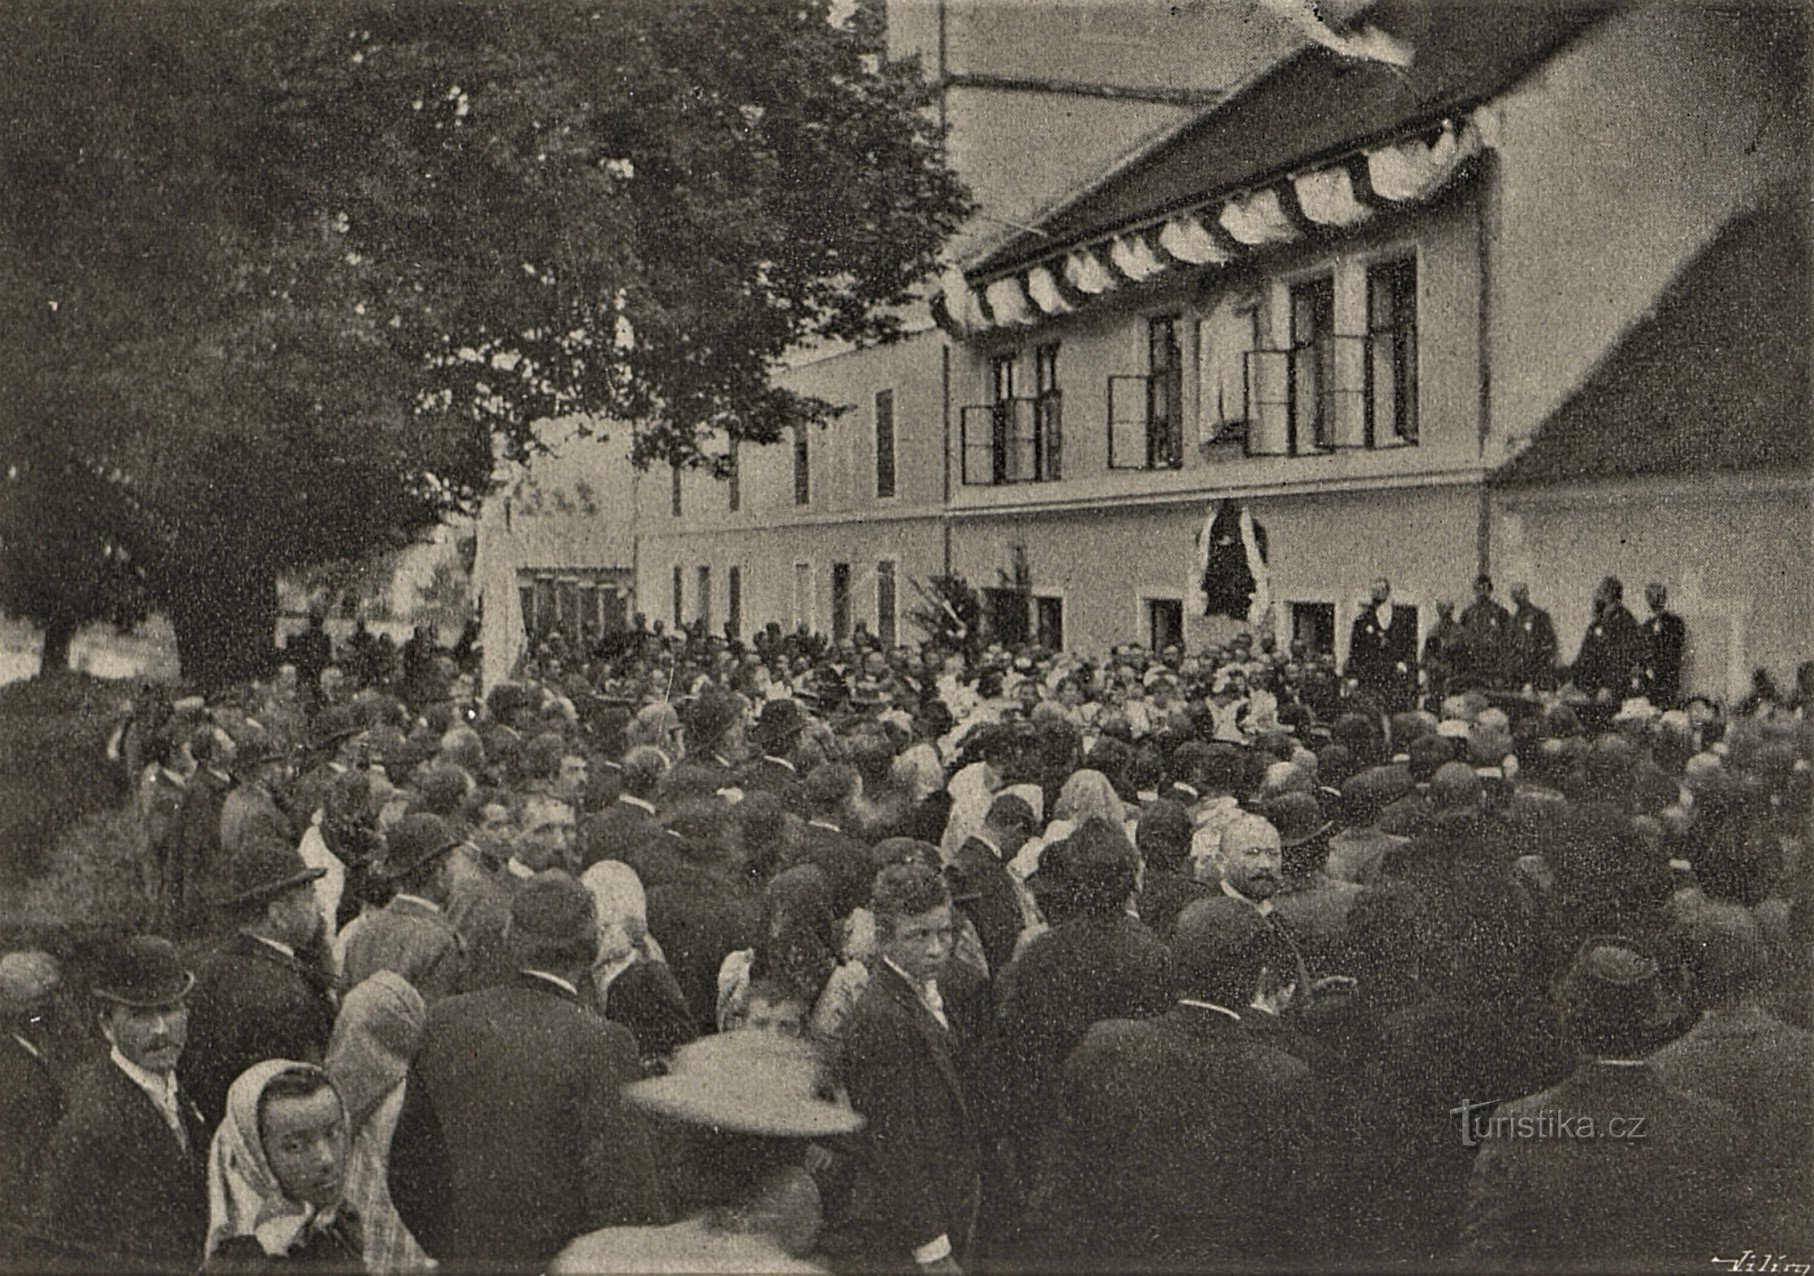 Muistolaatan juhlallinen paljastaminen JUDr. Julius Grégrolle (2.10.1898. lokakuuta XNUMX))